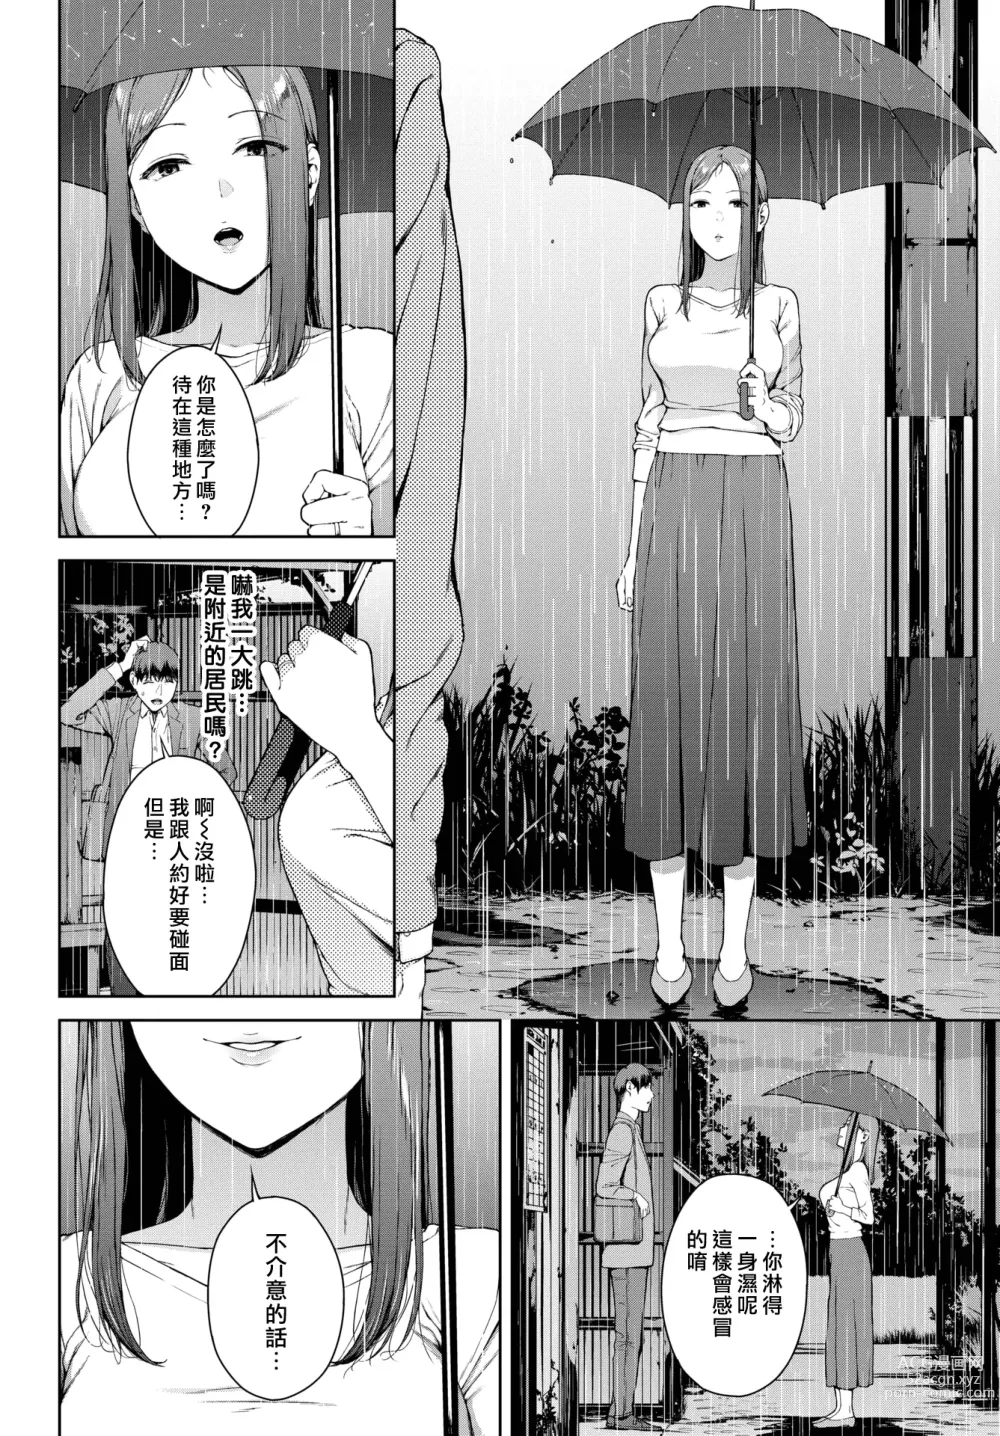 Page 4 of manga 躲雨